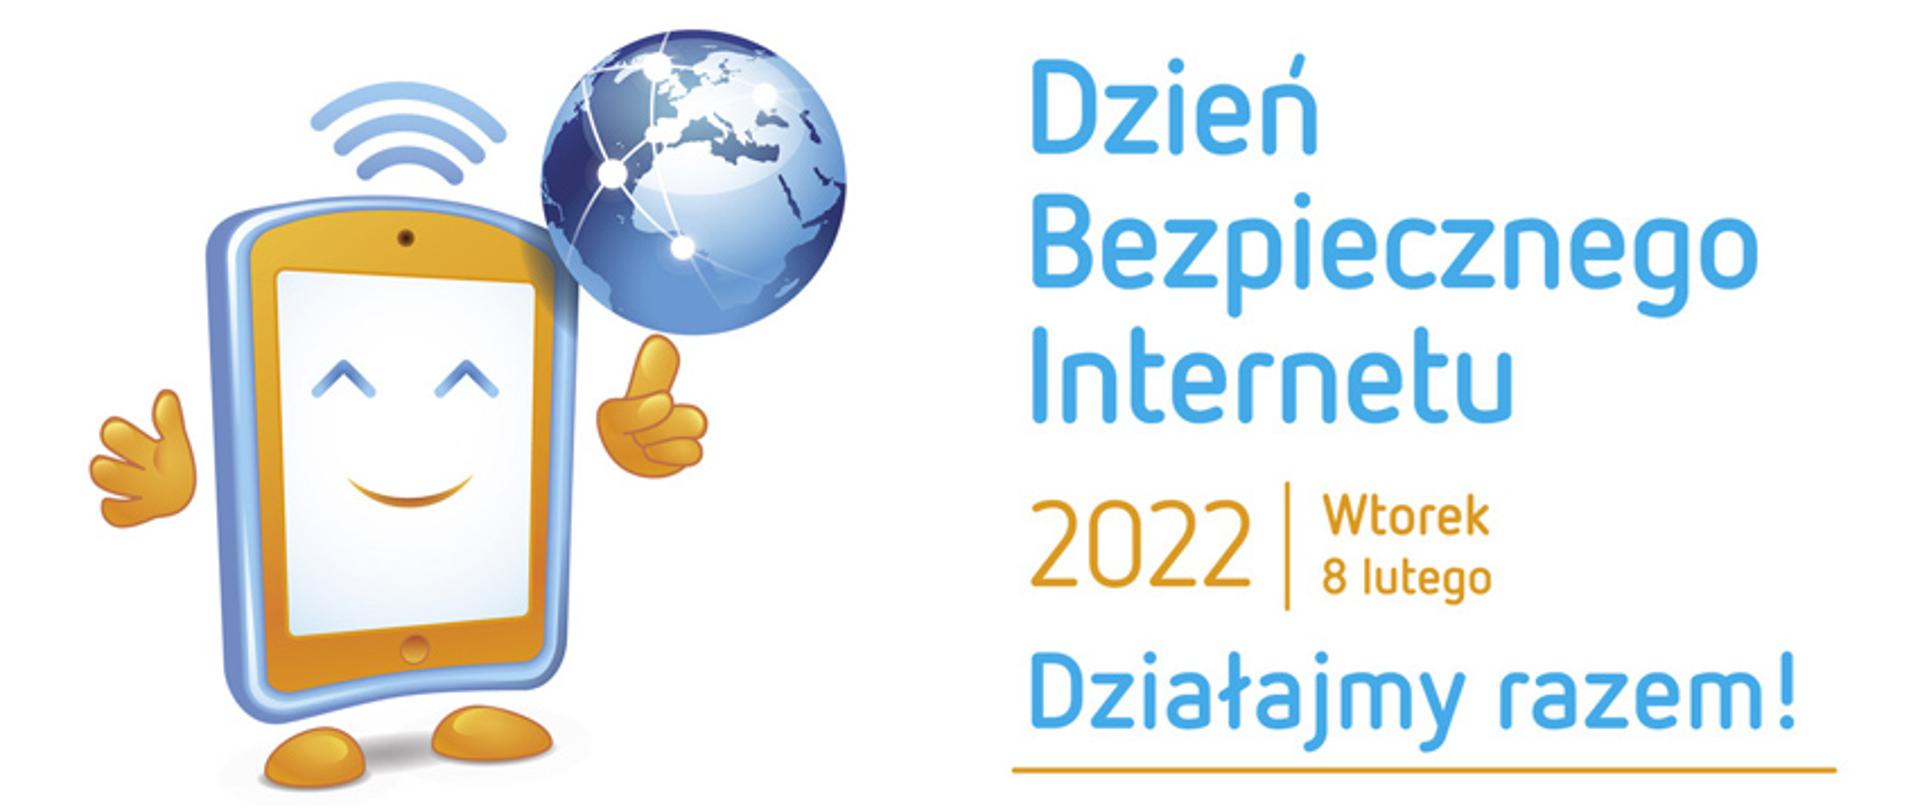 Grafika na białym tle. Po lewej stronie rysunek smartfona z rączkami - jedna ręka wskazuje rysunek globusa. P prawej stornie niebiesko - pomarańczowy napis Dzień Bezpiecznego Internetu 2022 wtorek 8 lutego, Działajmy Razem!